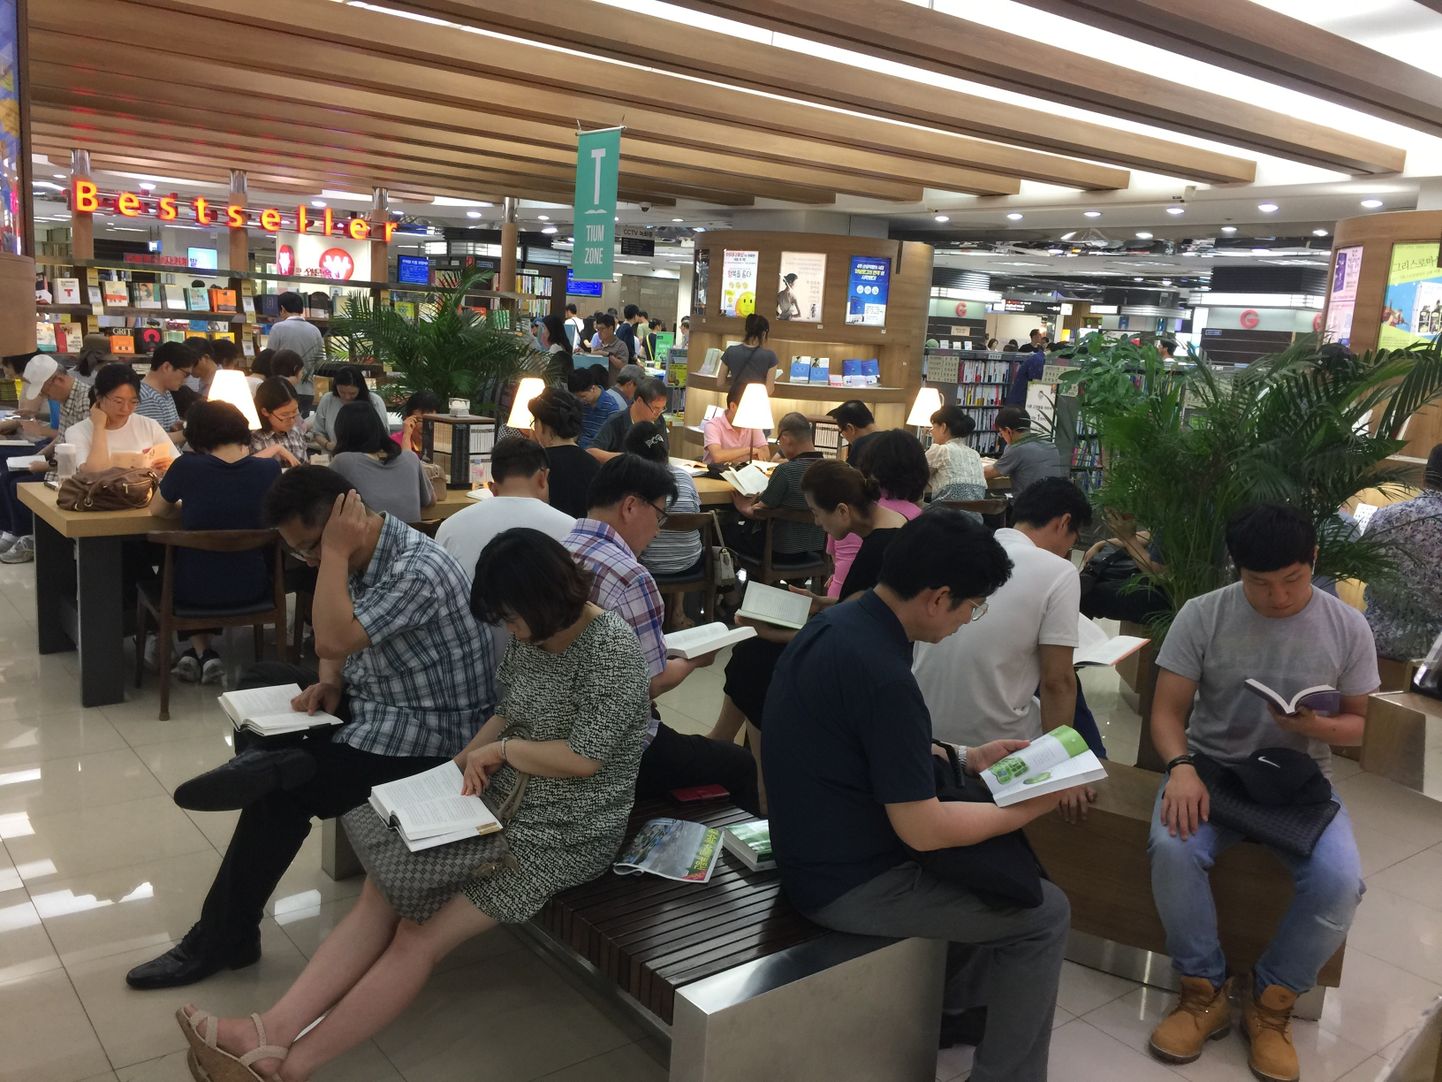 Soul, Lõuna-Korea, 6. august 2017. Inimesed loevad Kyobo raamatupoes raamatuid, et vältida kuumalainega õues piinlemist.